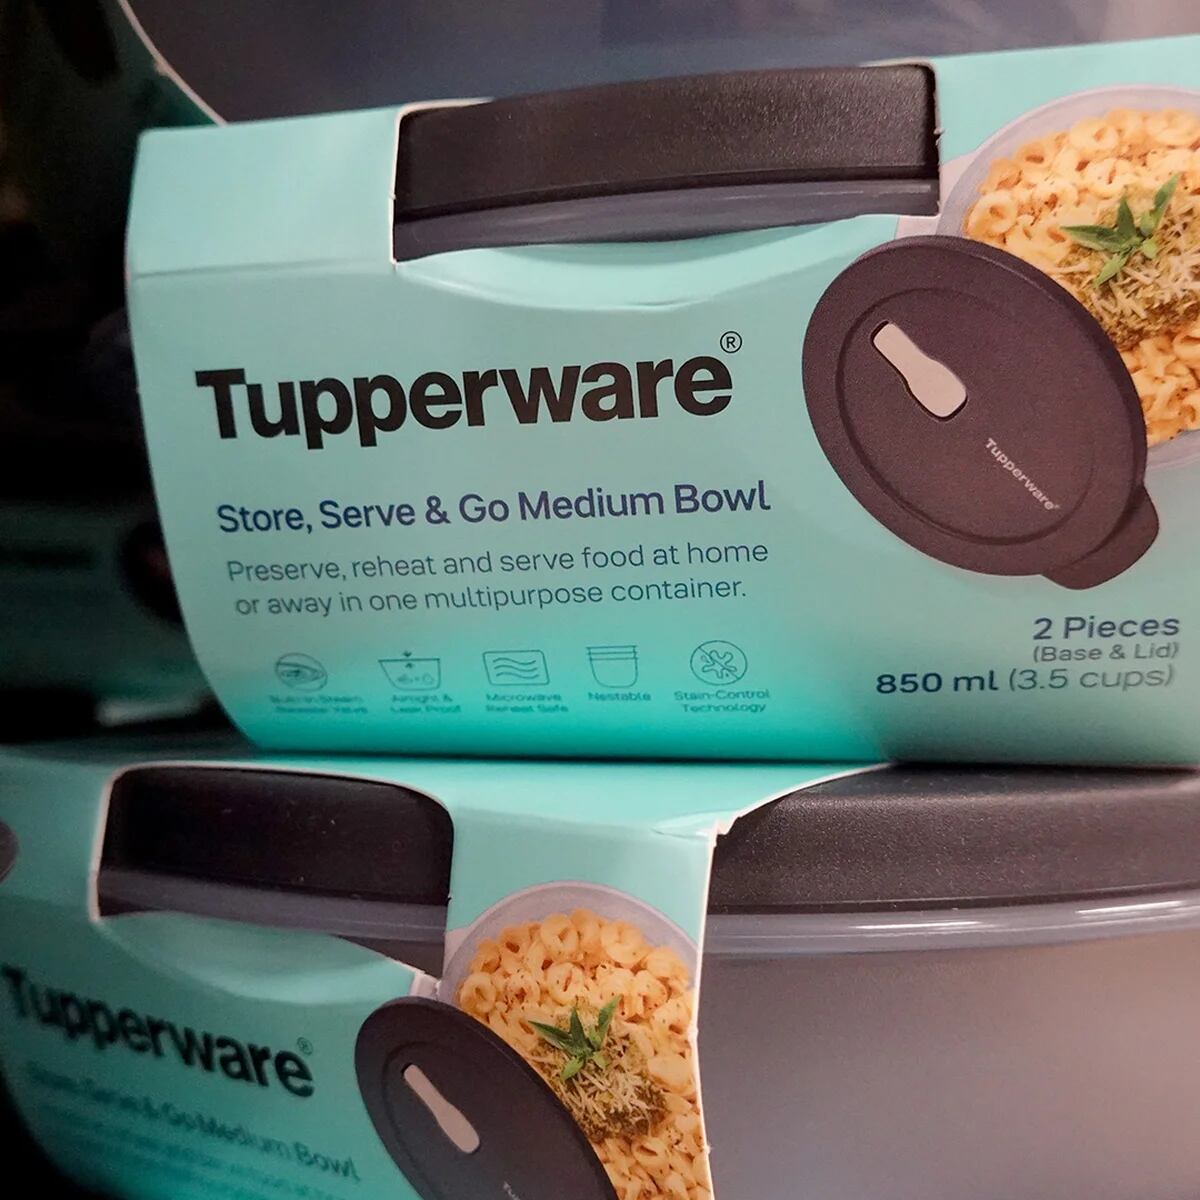 Tupperware, al borde de la quiebra: por qué la emblemática marca podría  cerrar para siempre